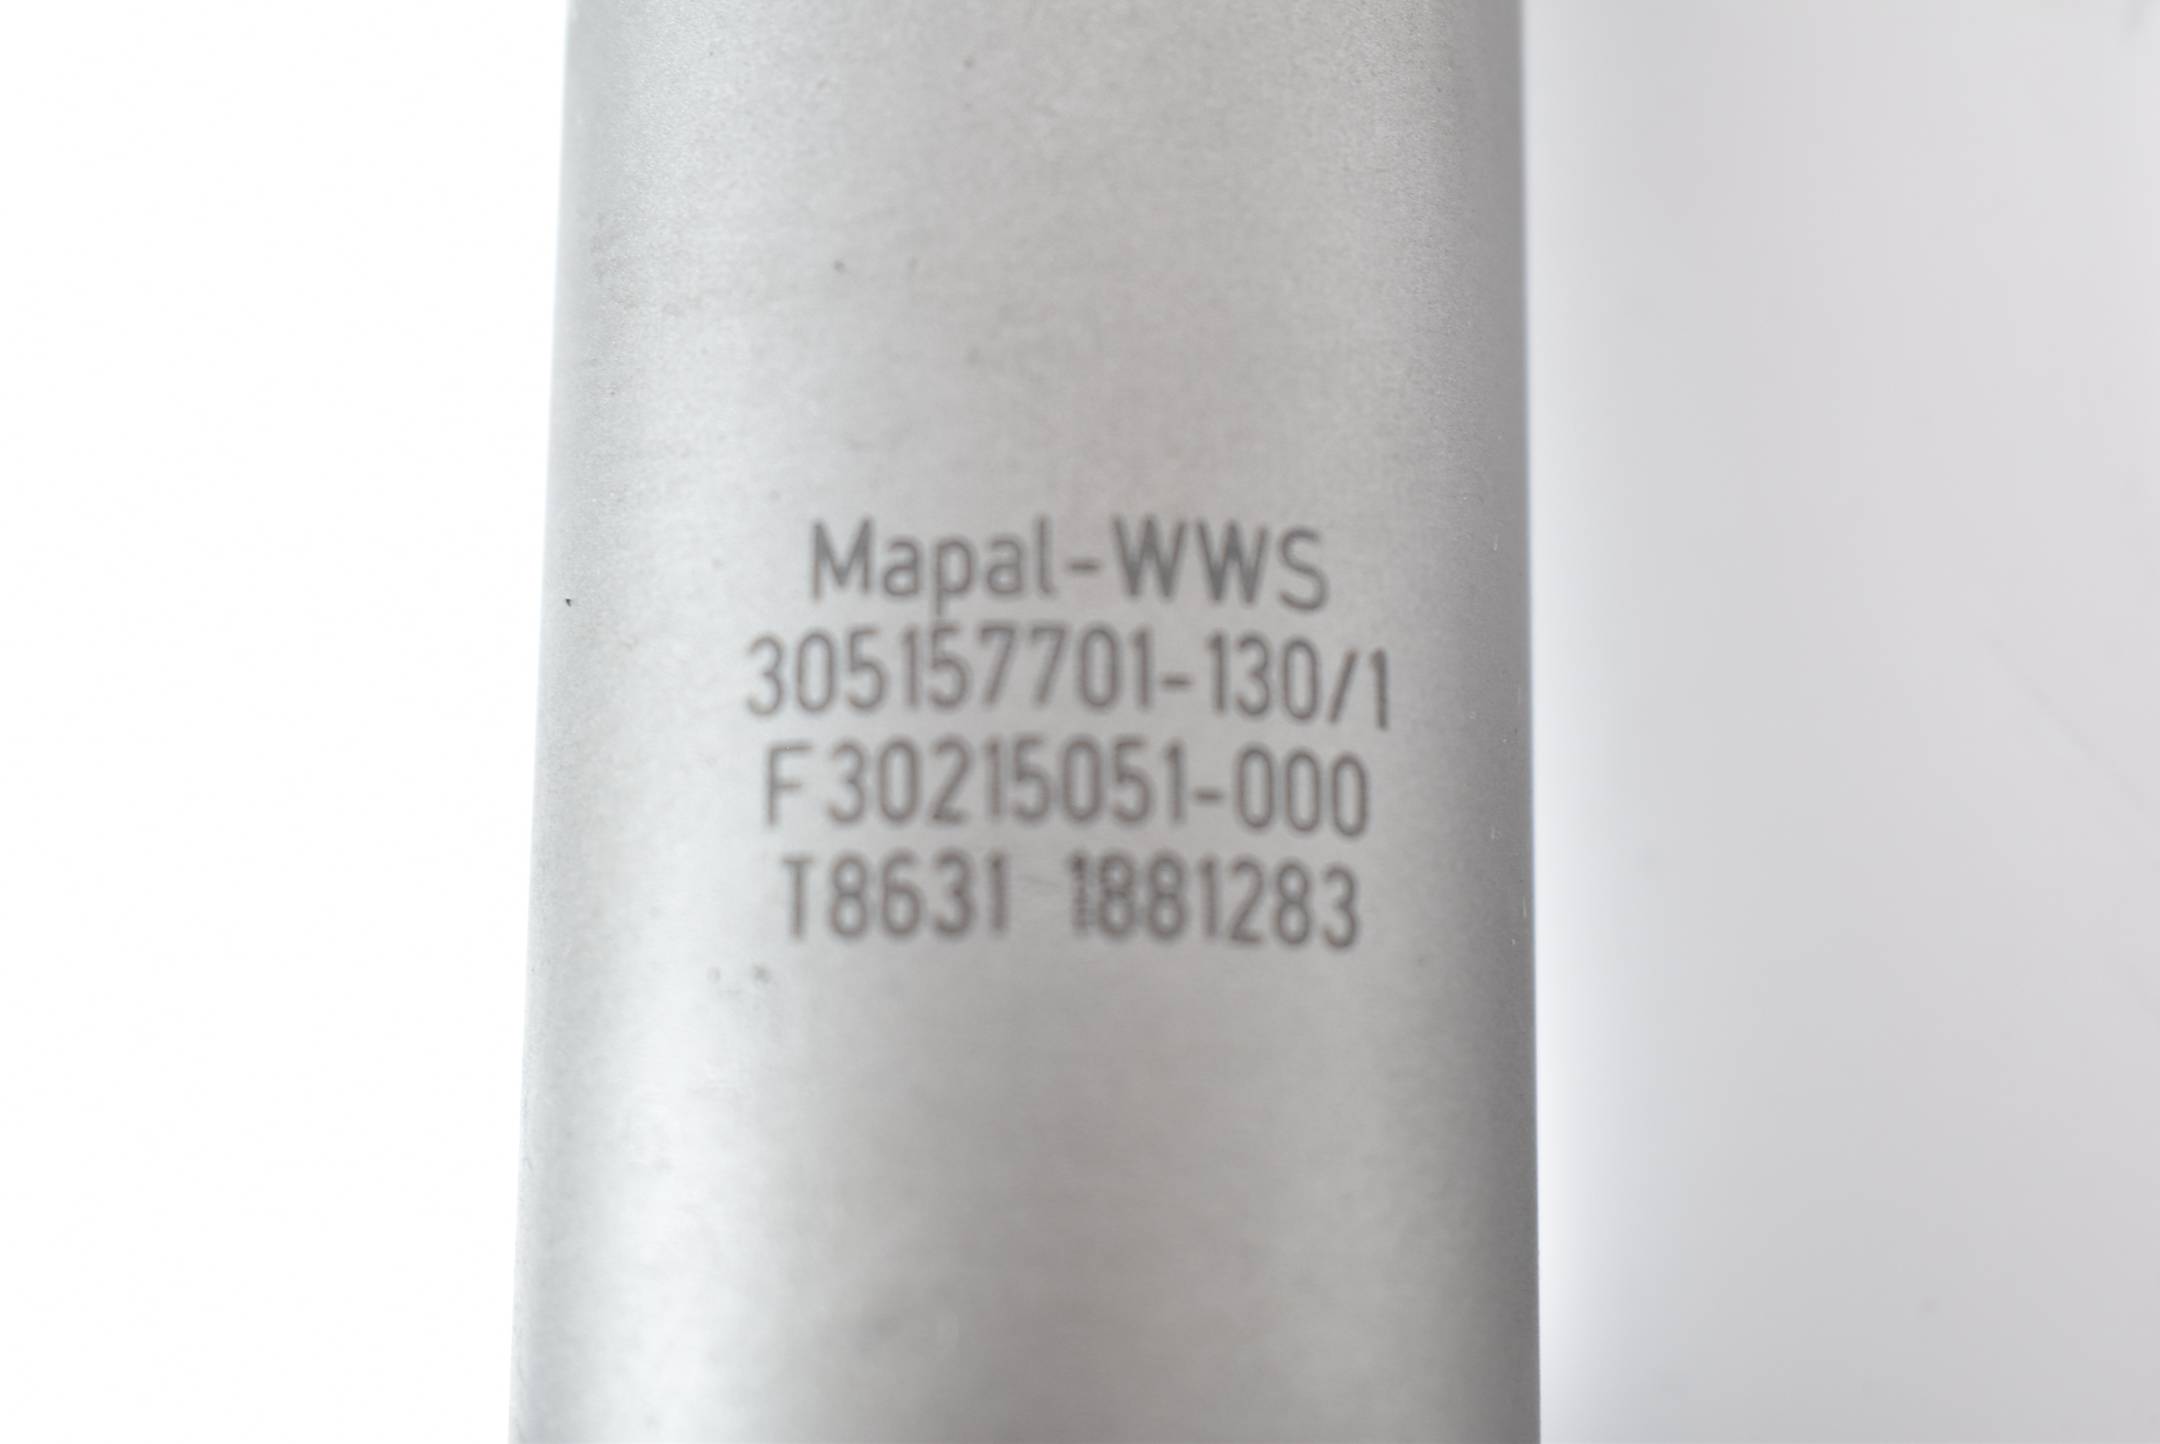 Mapal-WWS Fräskopf 305157701-130/1 ( F30215051-000 ) 1881283 T8631